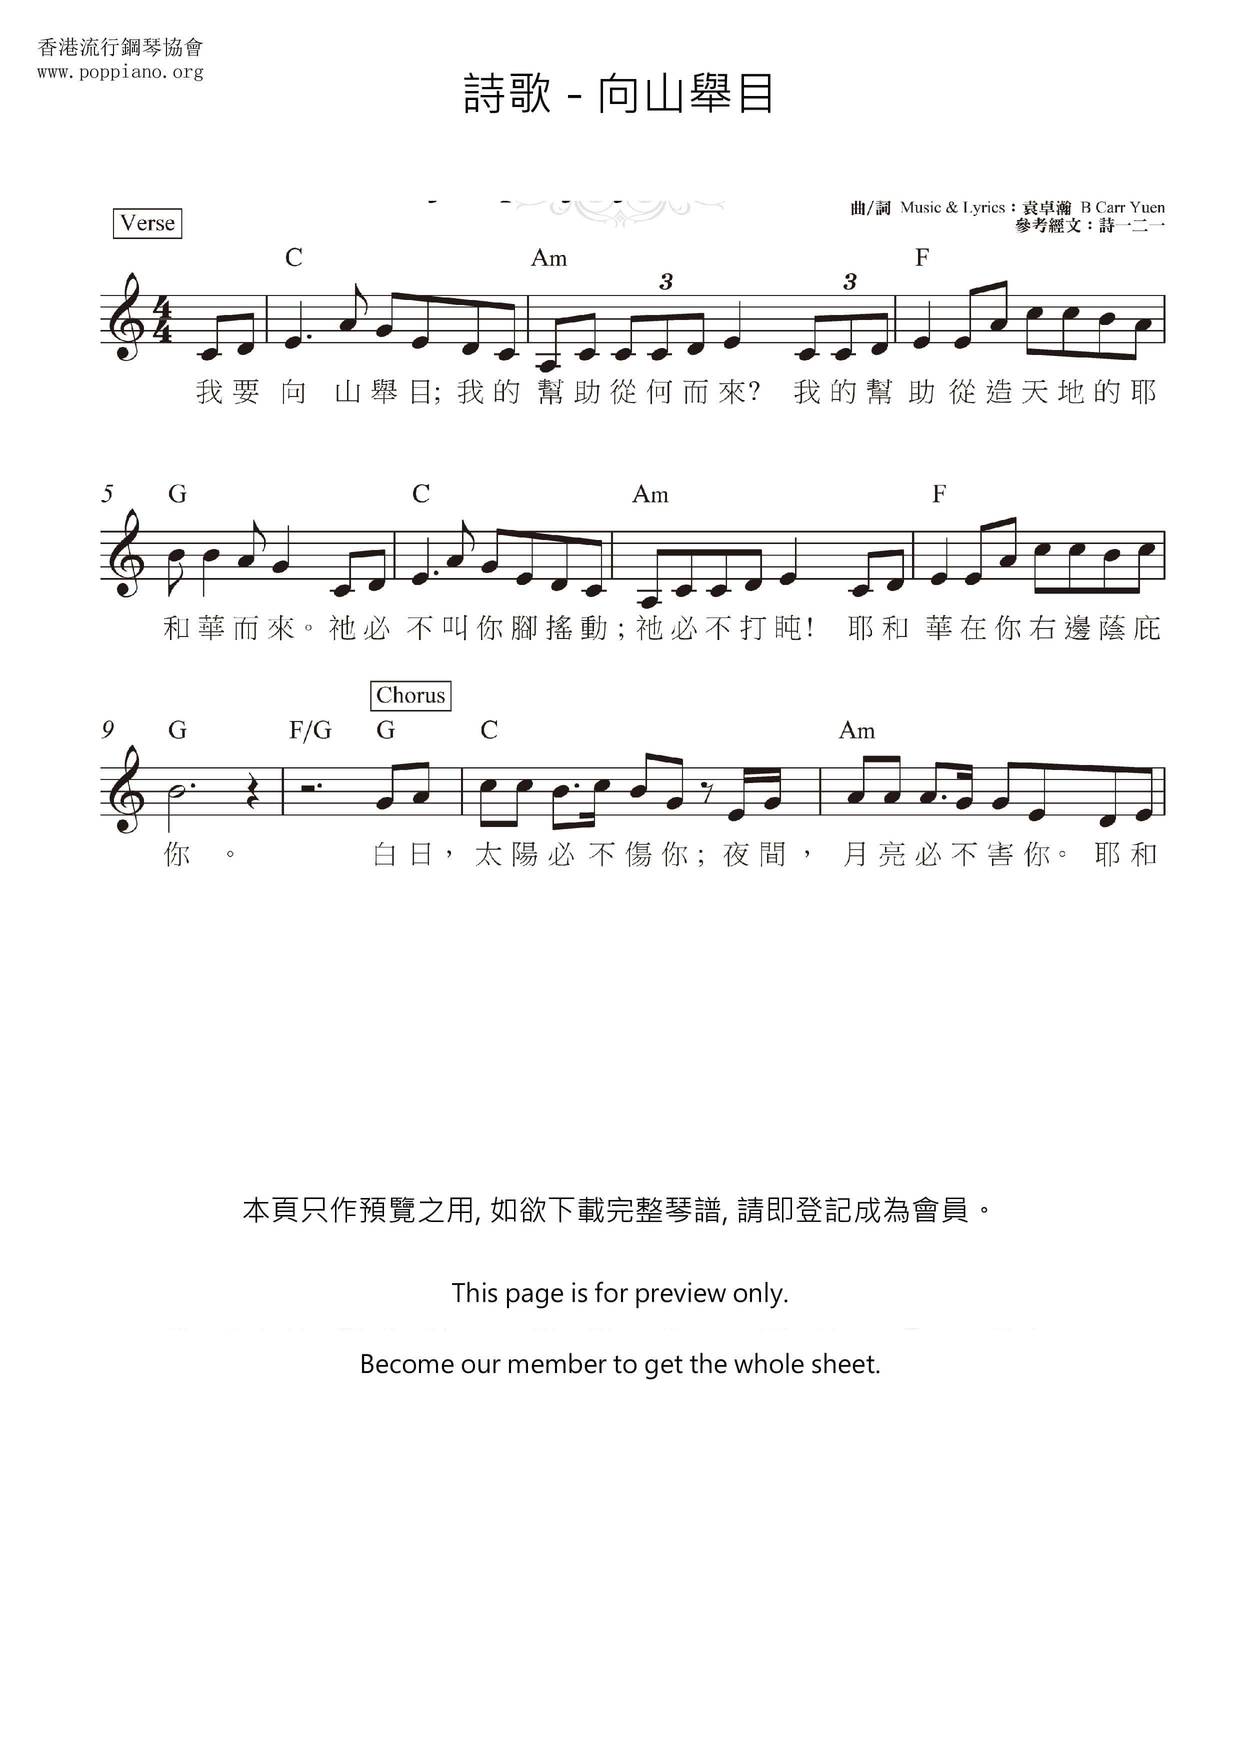 Xiangshan Mountain Score